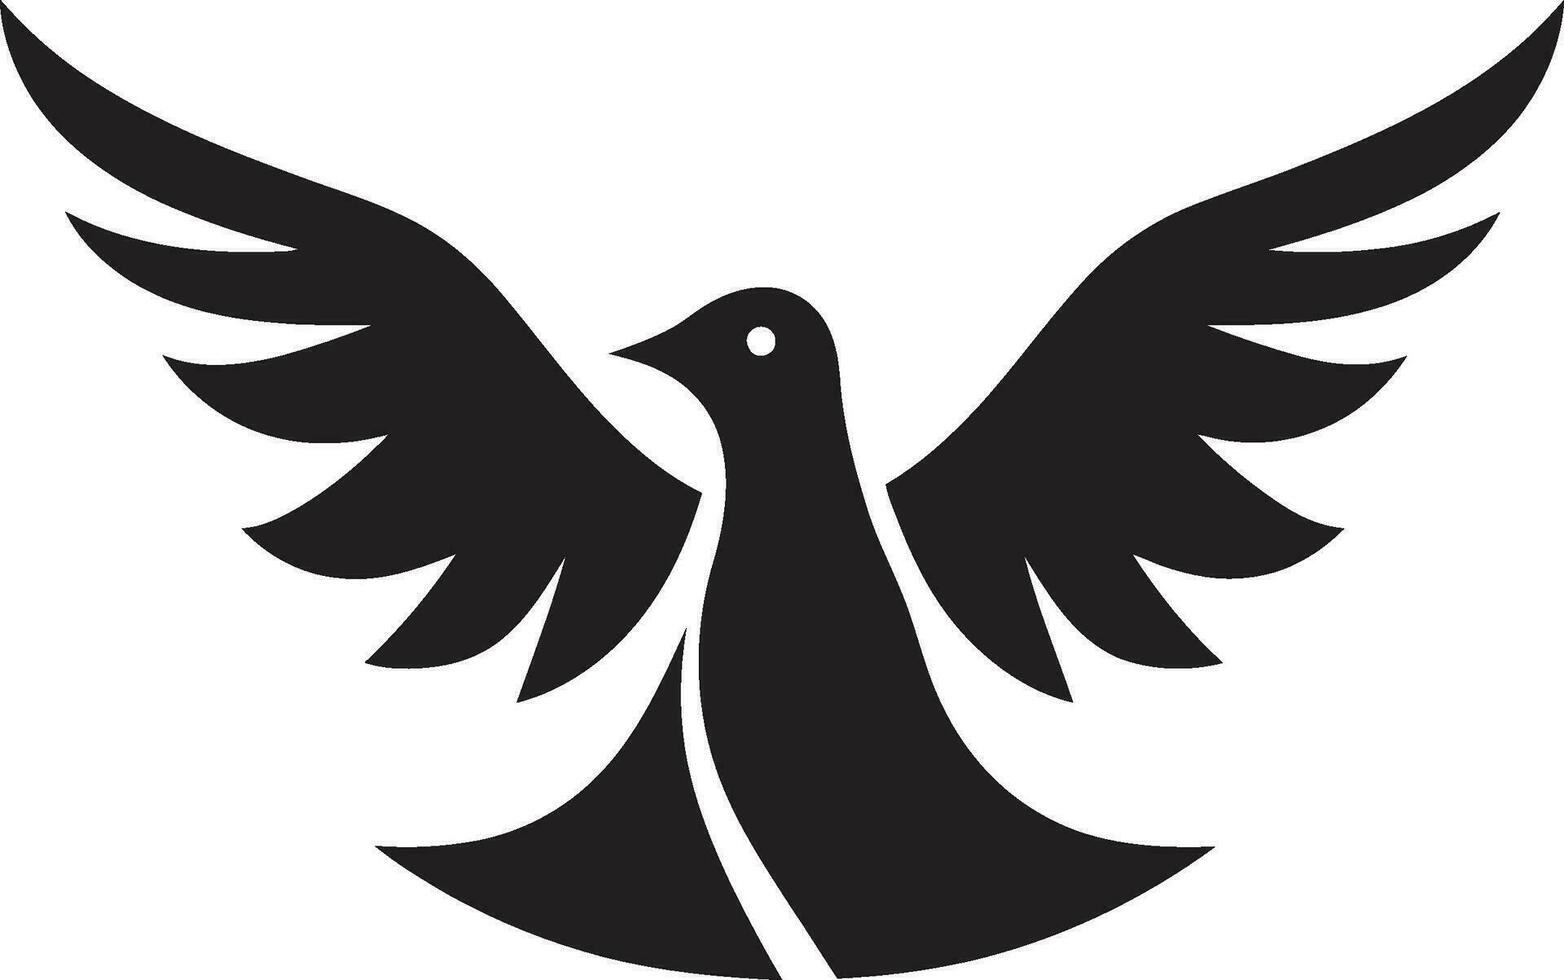 zwart duif vector logo met olijf- Afdeling een symbool van vrede en harmonie zwart duif vector logo met hart een symbool van liefde en mededogen